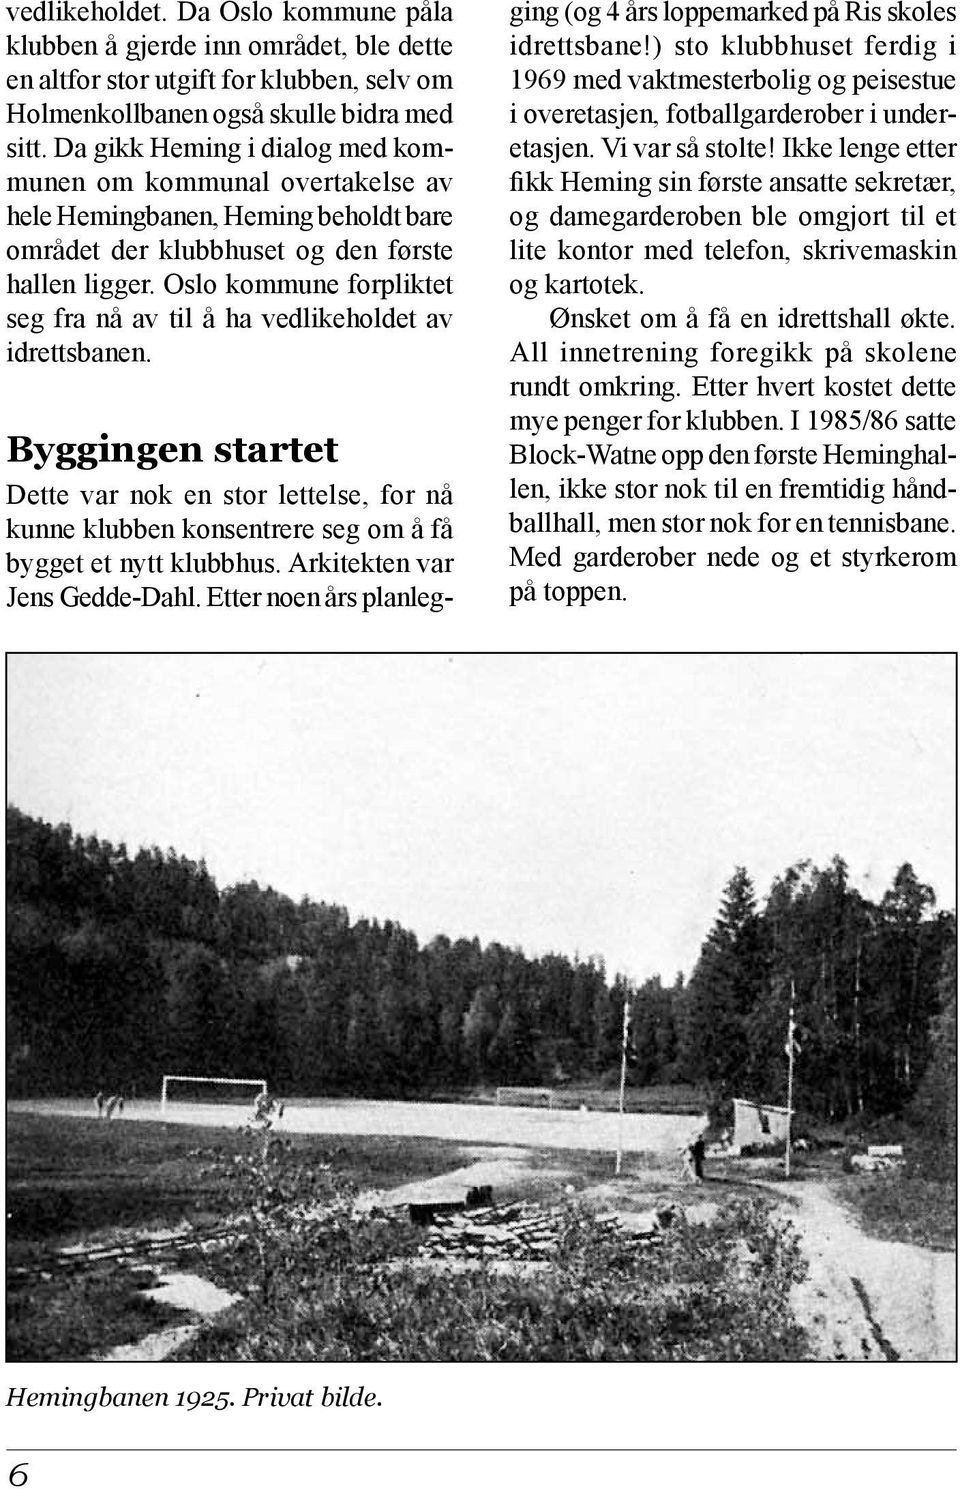 Oslo kommune forpliktet seg fra nå av til å ha vedlikeholdet av idrettsbanen. Byggingen startet Dette var nok en stor lettelse, for nå kunne klubben konsentrere seg om å få bygget et nytt klubbhus.